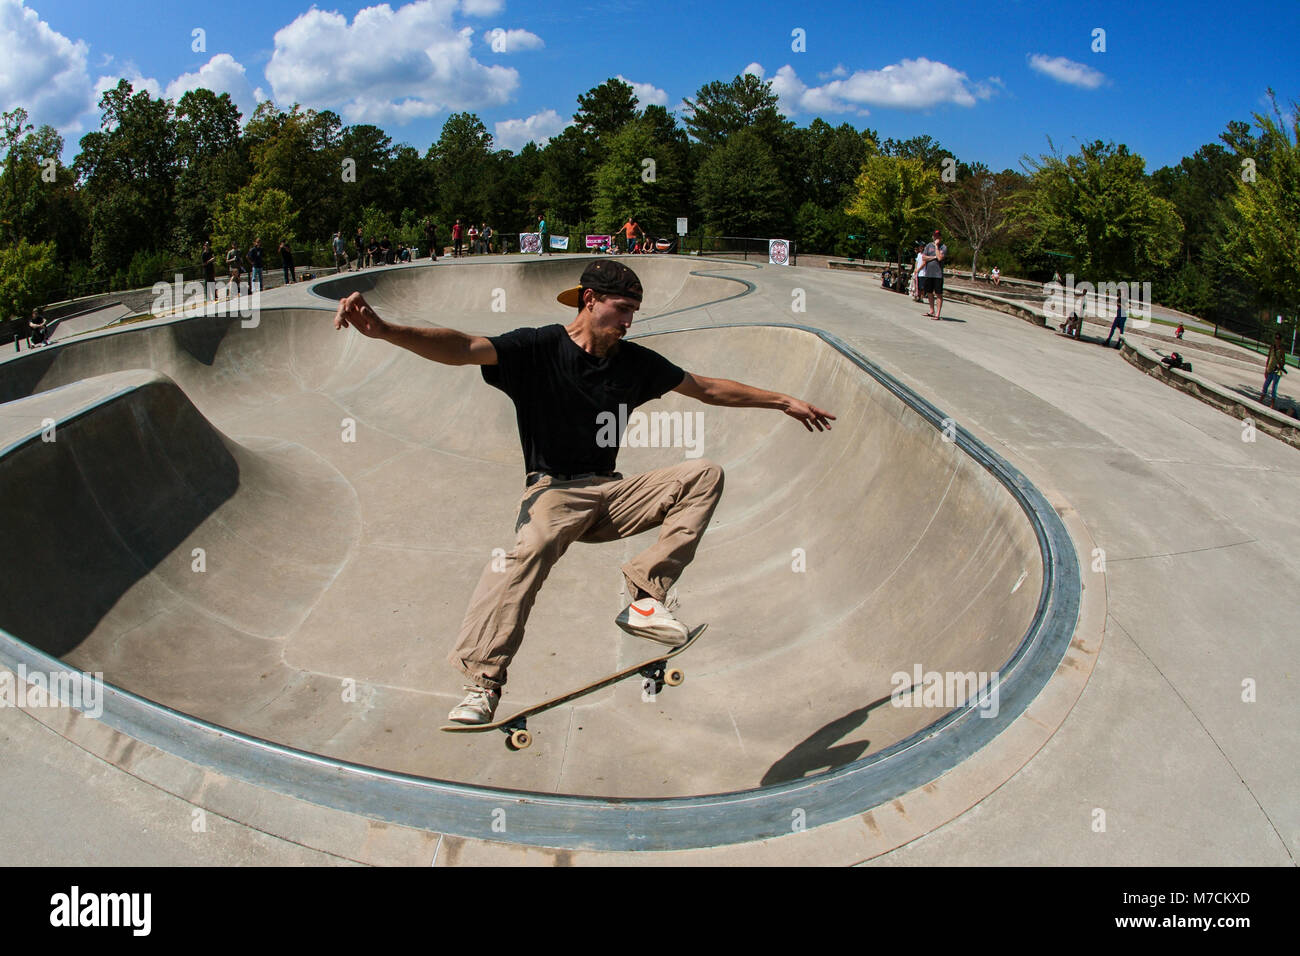 Un giovane uomo esegue un midair skateboard trick in skateboard di coppa a ponte si assesta Park in Suwanee GA, 16 settembre, 2017. Foto Stock